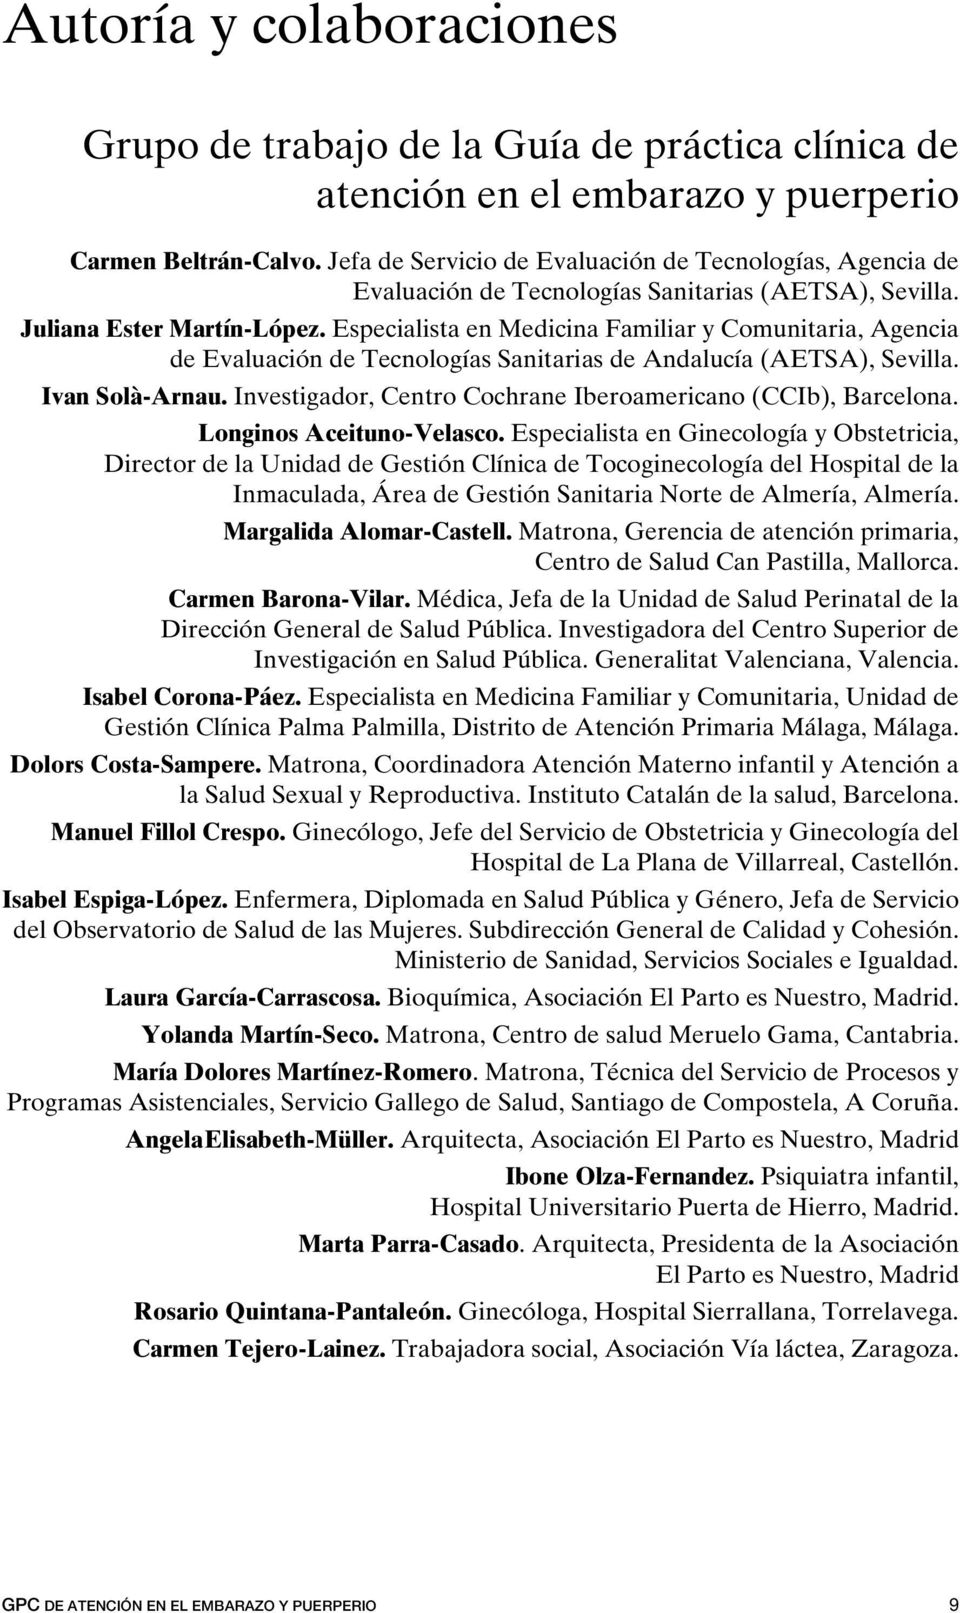 Especialista en Medicina Familiar y Comunitaria, Agencia de Evaluación de Tecnologías Sanitarias de Andalucía (AETSA), Sevilla. Ivan Solà-Arnau.